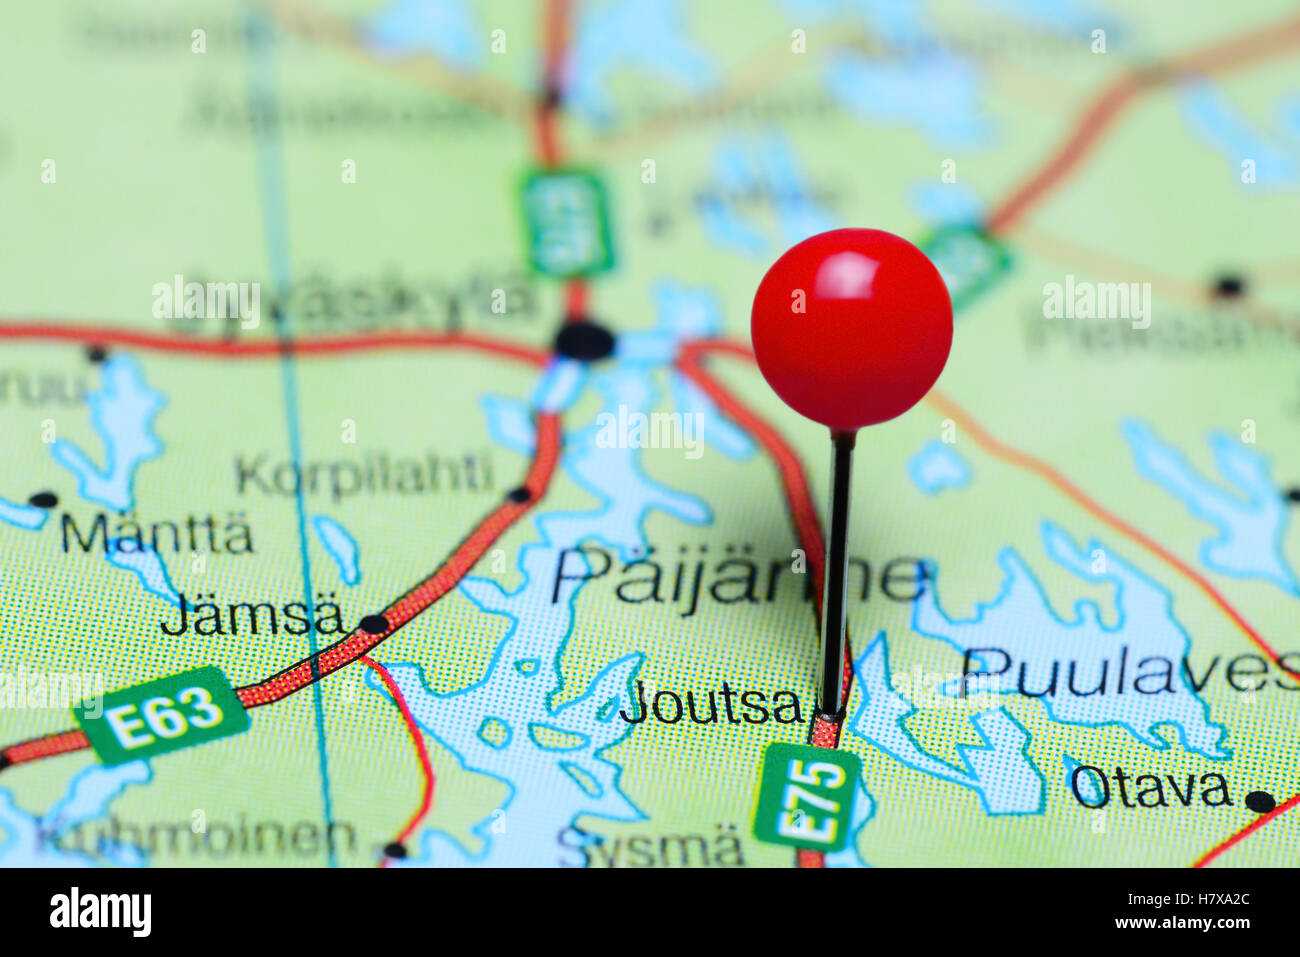 Joutsa pinned on a map of Finland Stock Photo